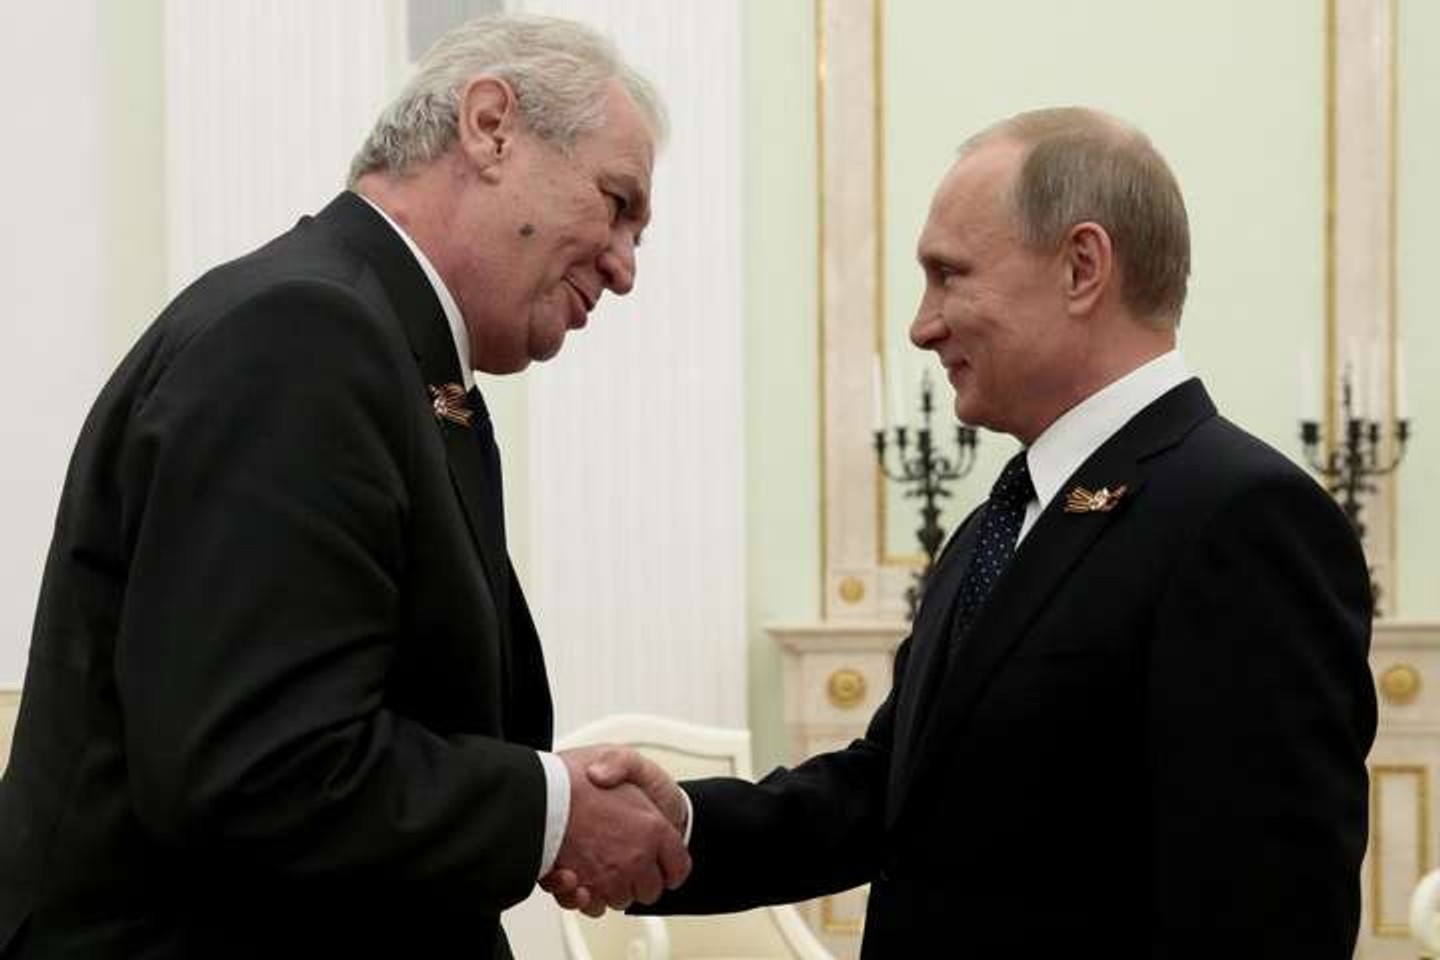 Журналісти знайшли договір, що підтверджує розслідування The Insider про корупційну зв'язку чеського президента з Кремлем